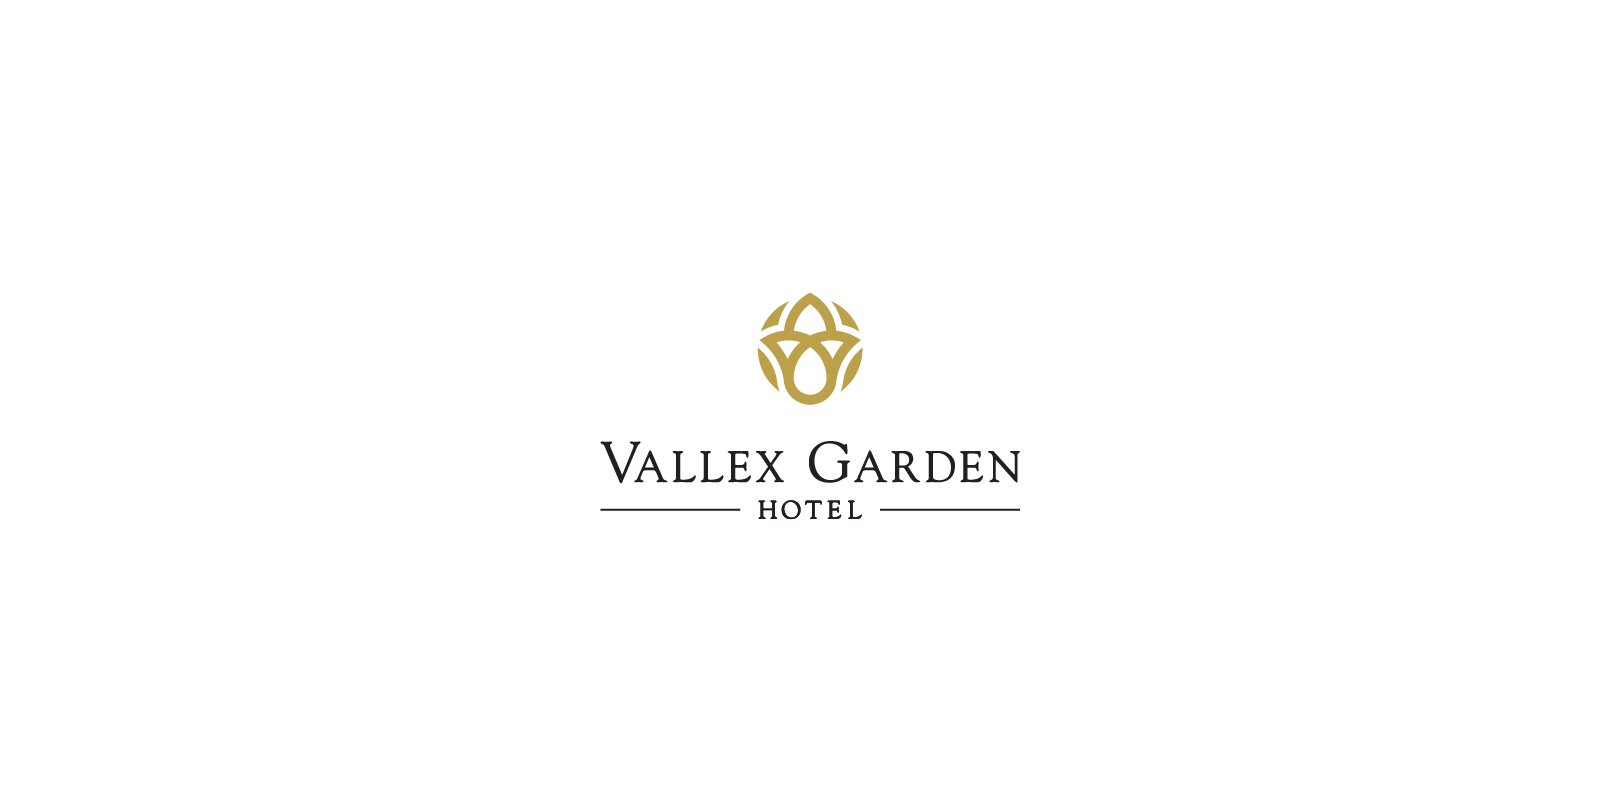 Vallex Garden hotel branding and logo design by Indigo branding